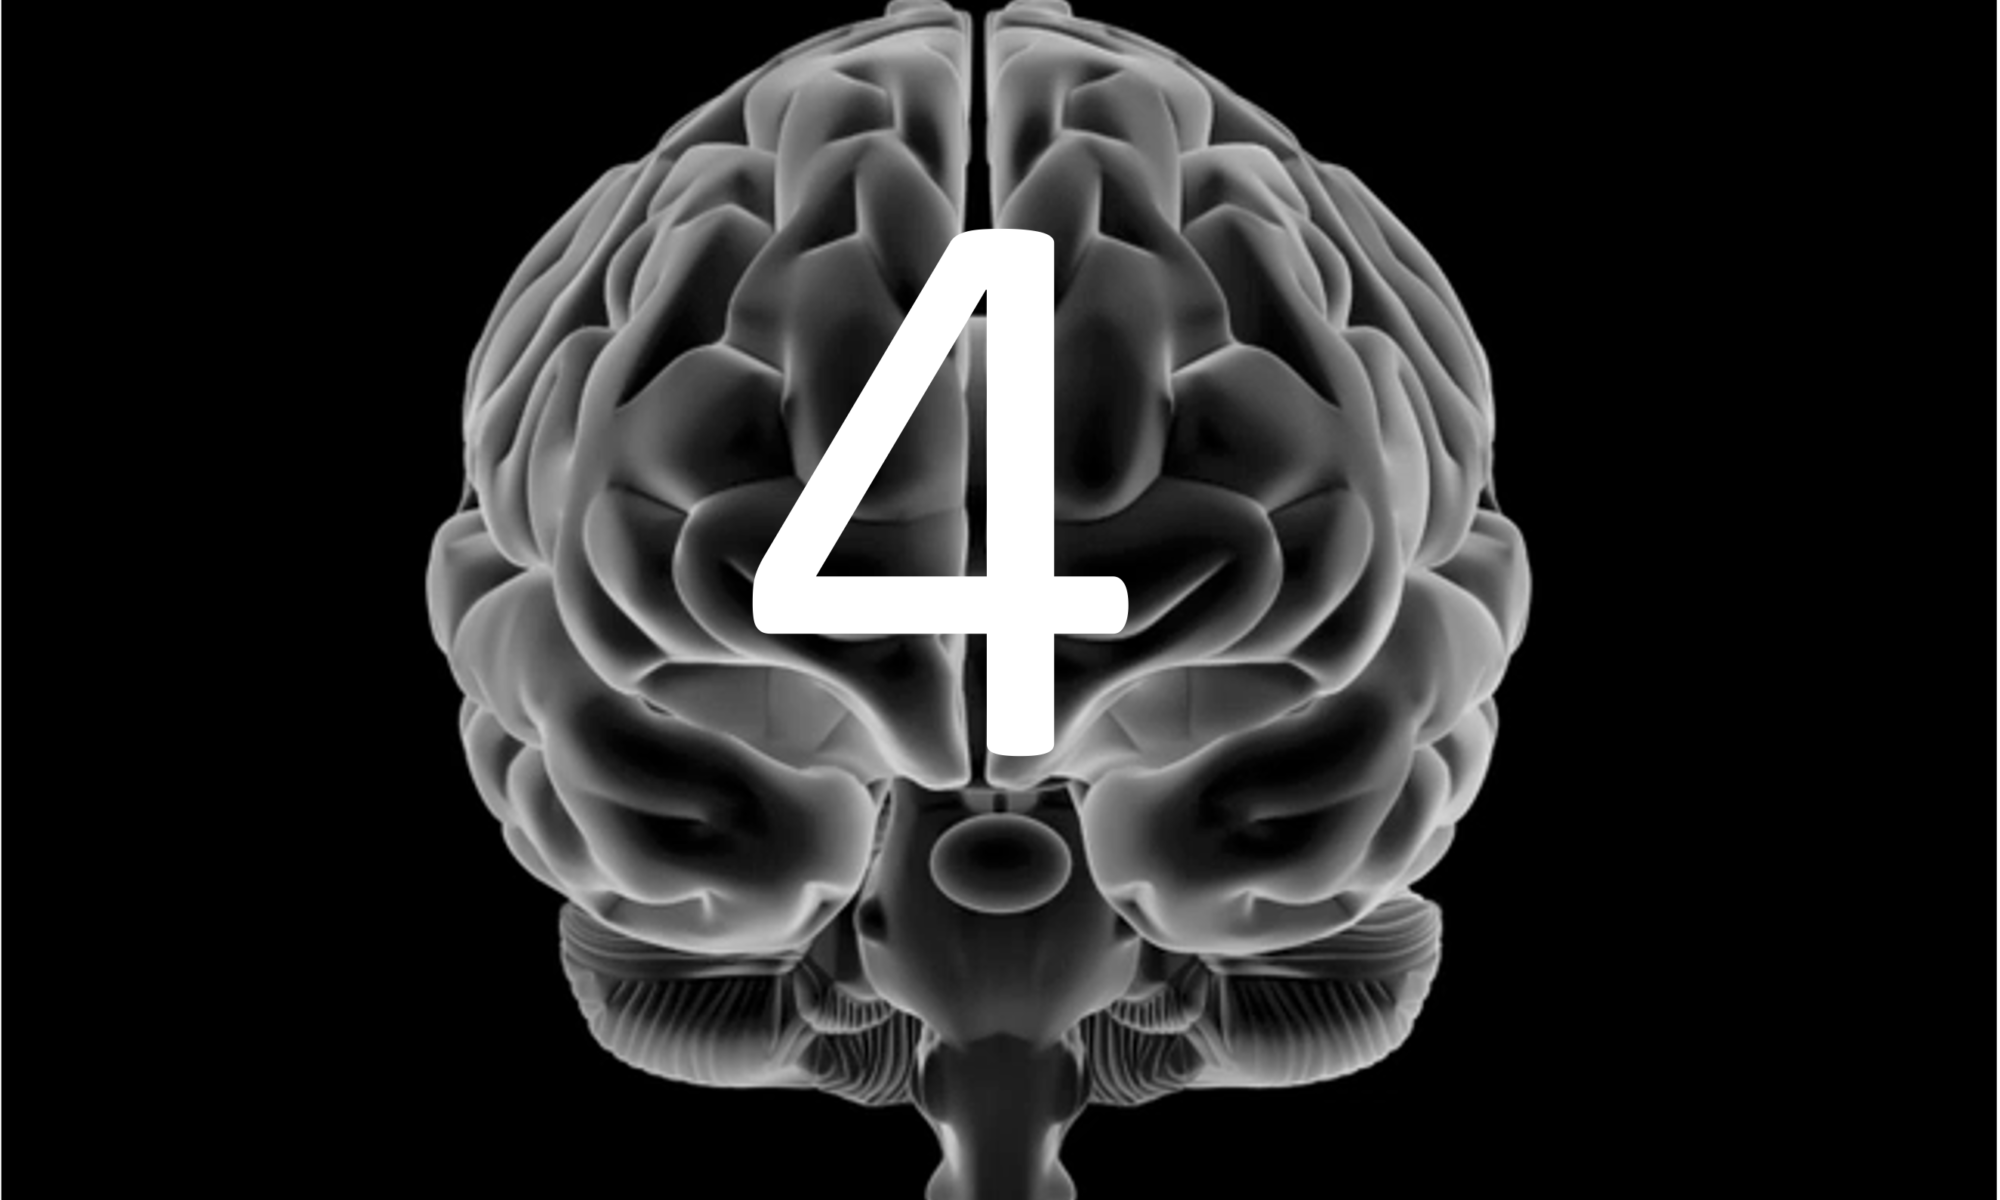 L'immagine mostra un cervello umano. Al centro del cervello, si trova il numero "4".